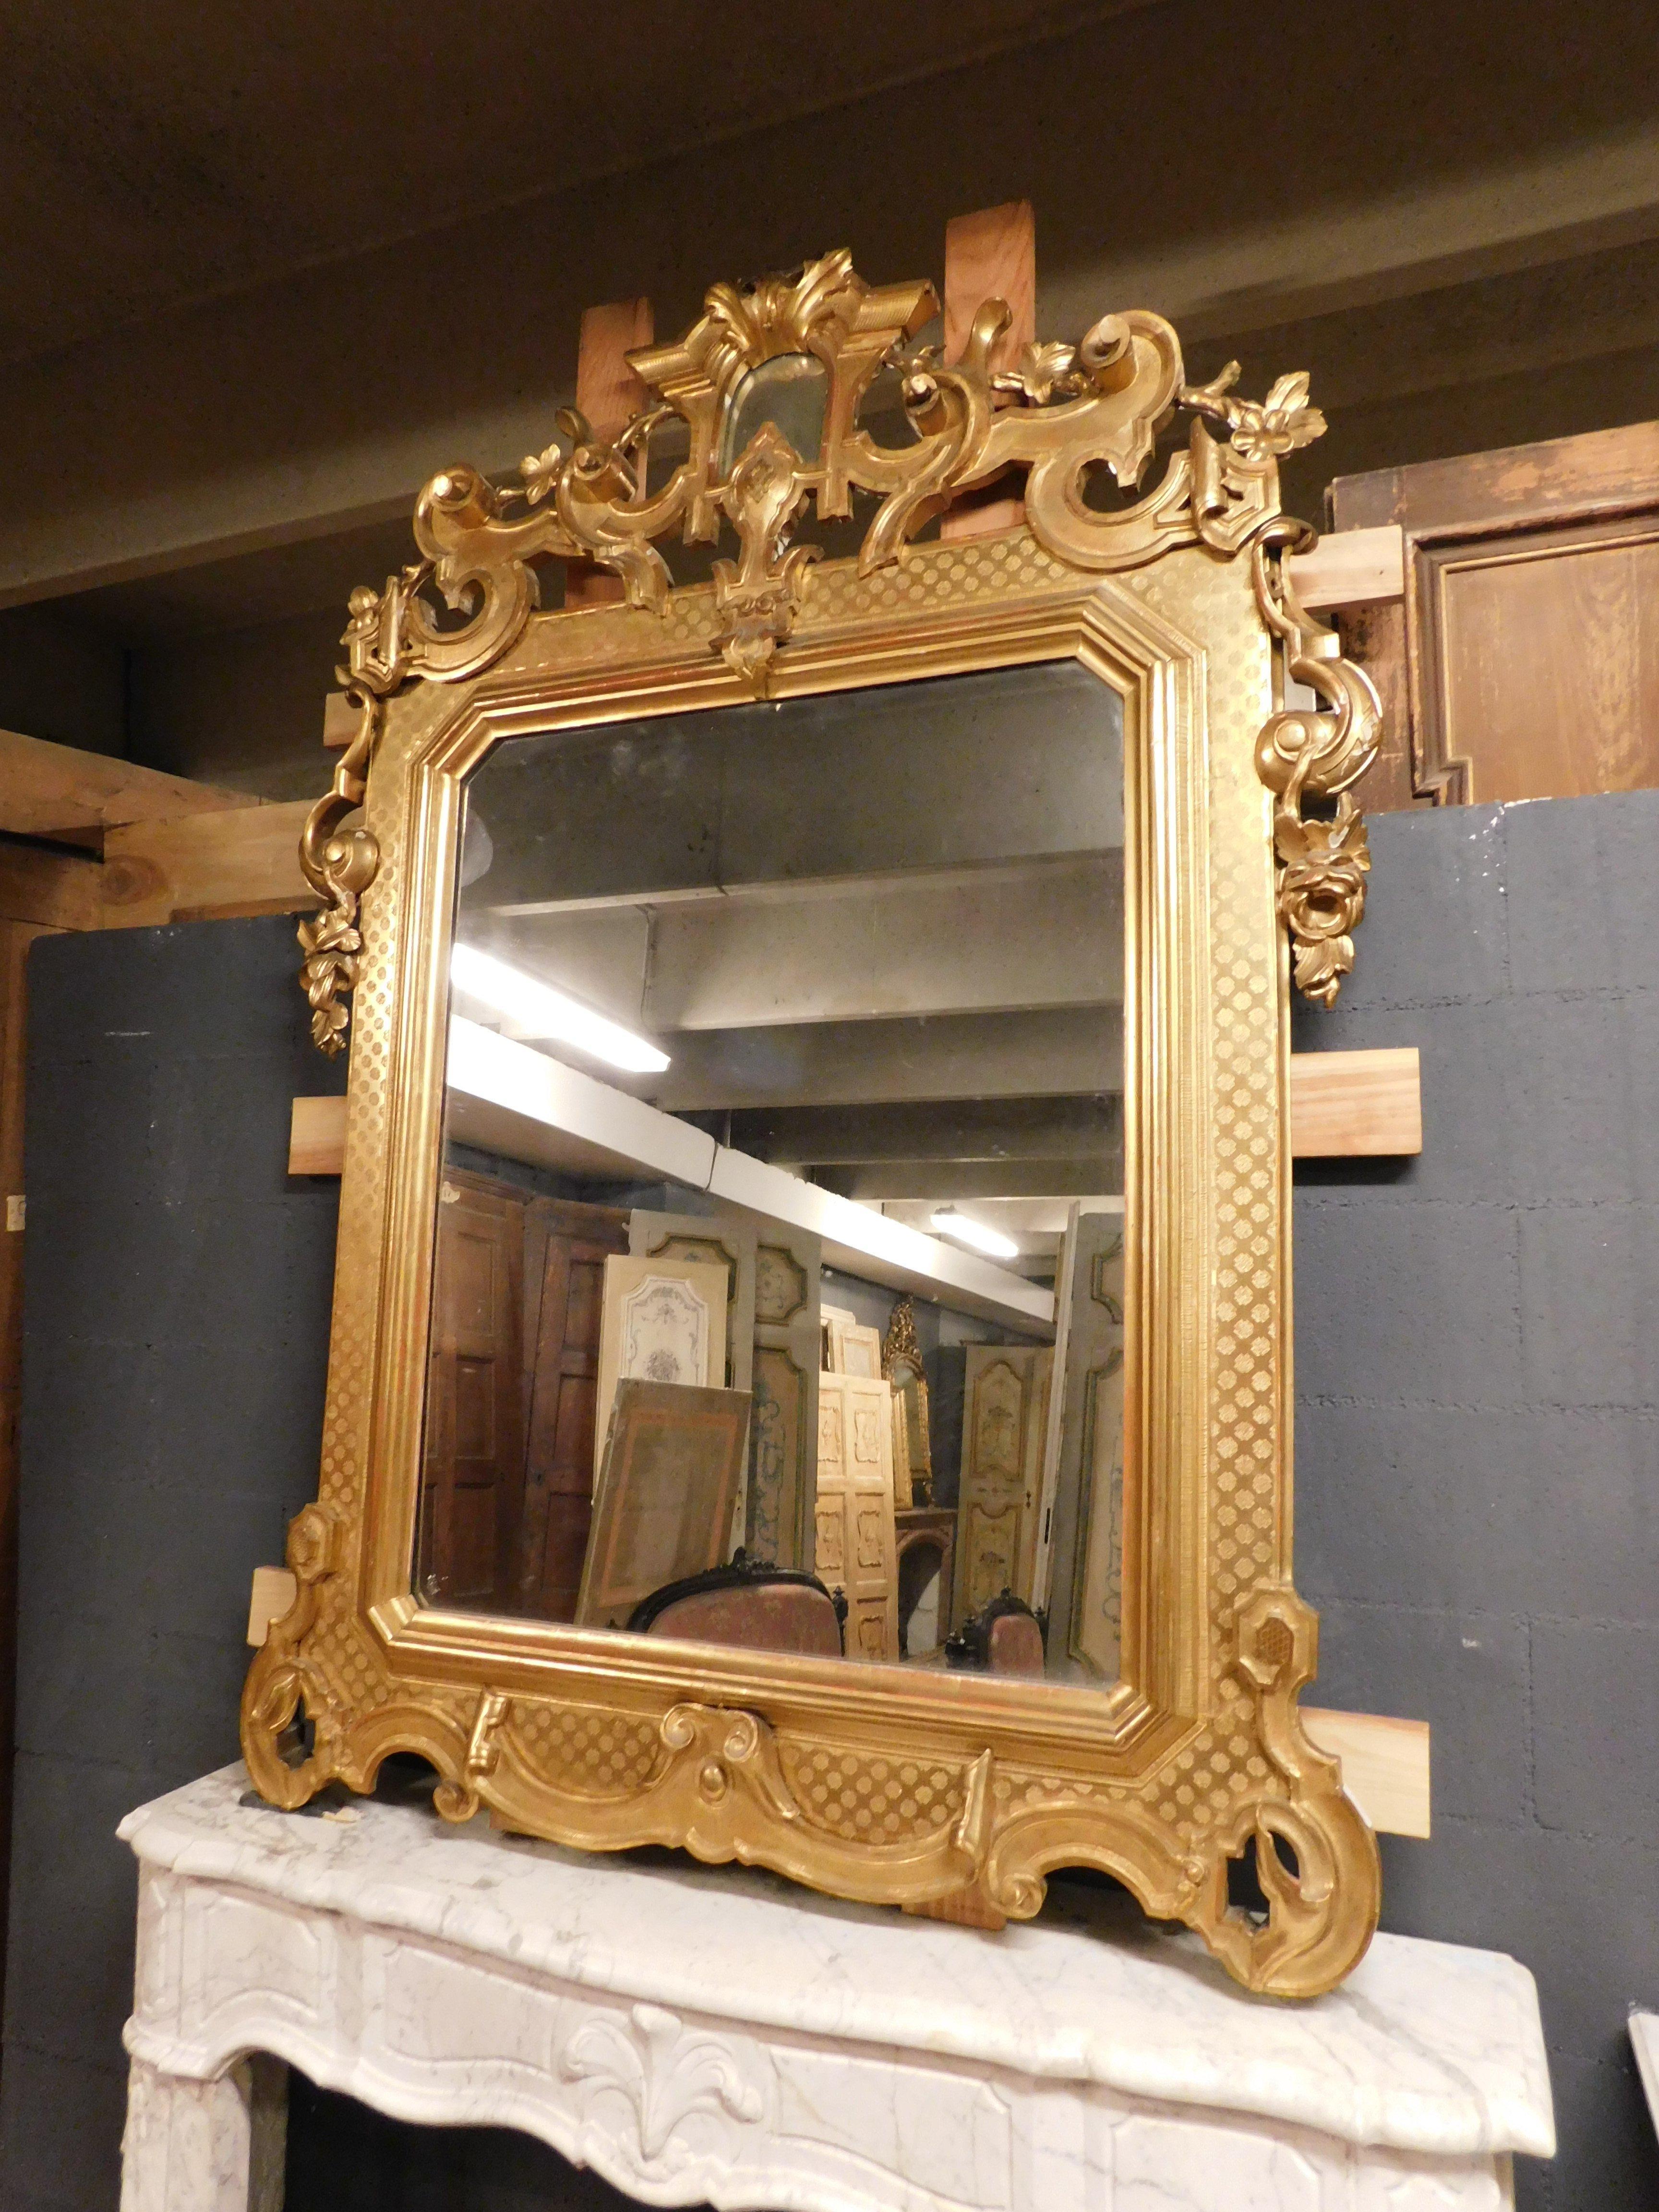 Ancien miroir doré et richement sculpté, avec une cimaise décorée et un cadre sculpté en bas-relief, très élégant et raffiné, construit pour reposer au-dessus d'une cheminée à la fin des années 1800 en Italie.
Taille maximale extérieure cm L 135 x